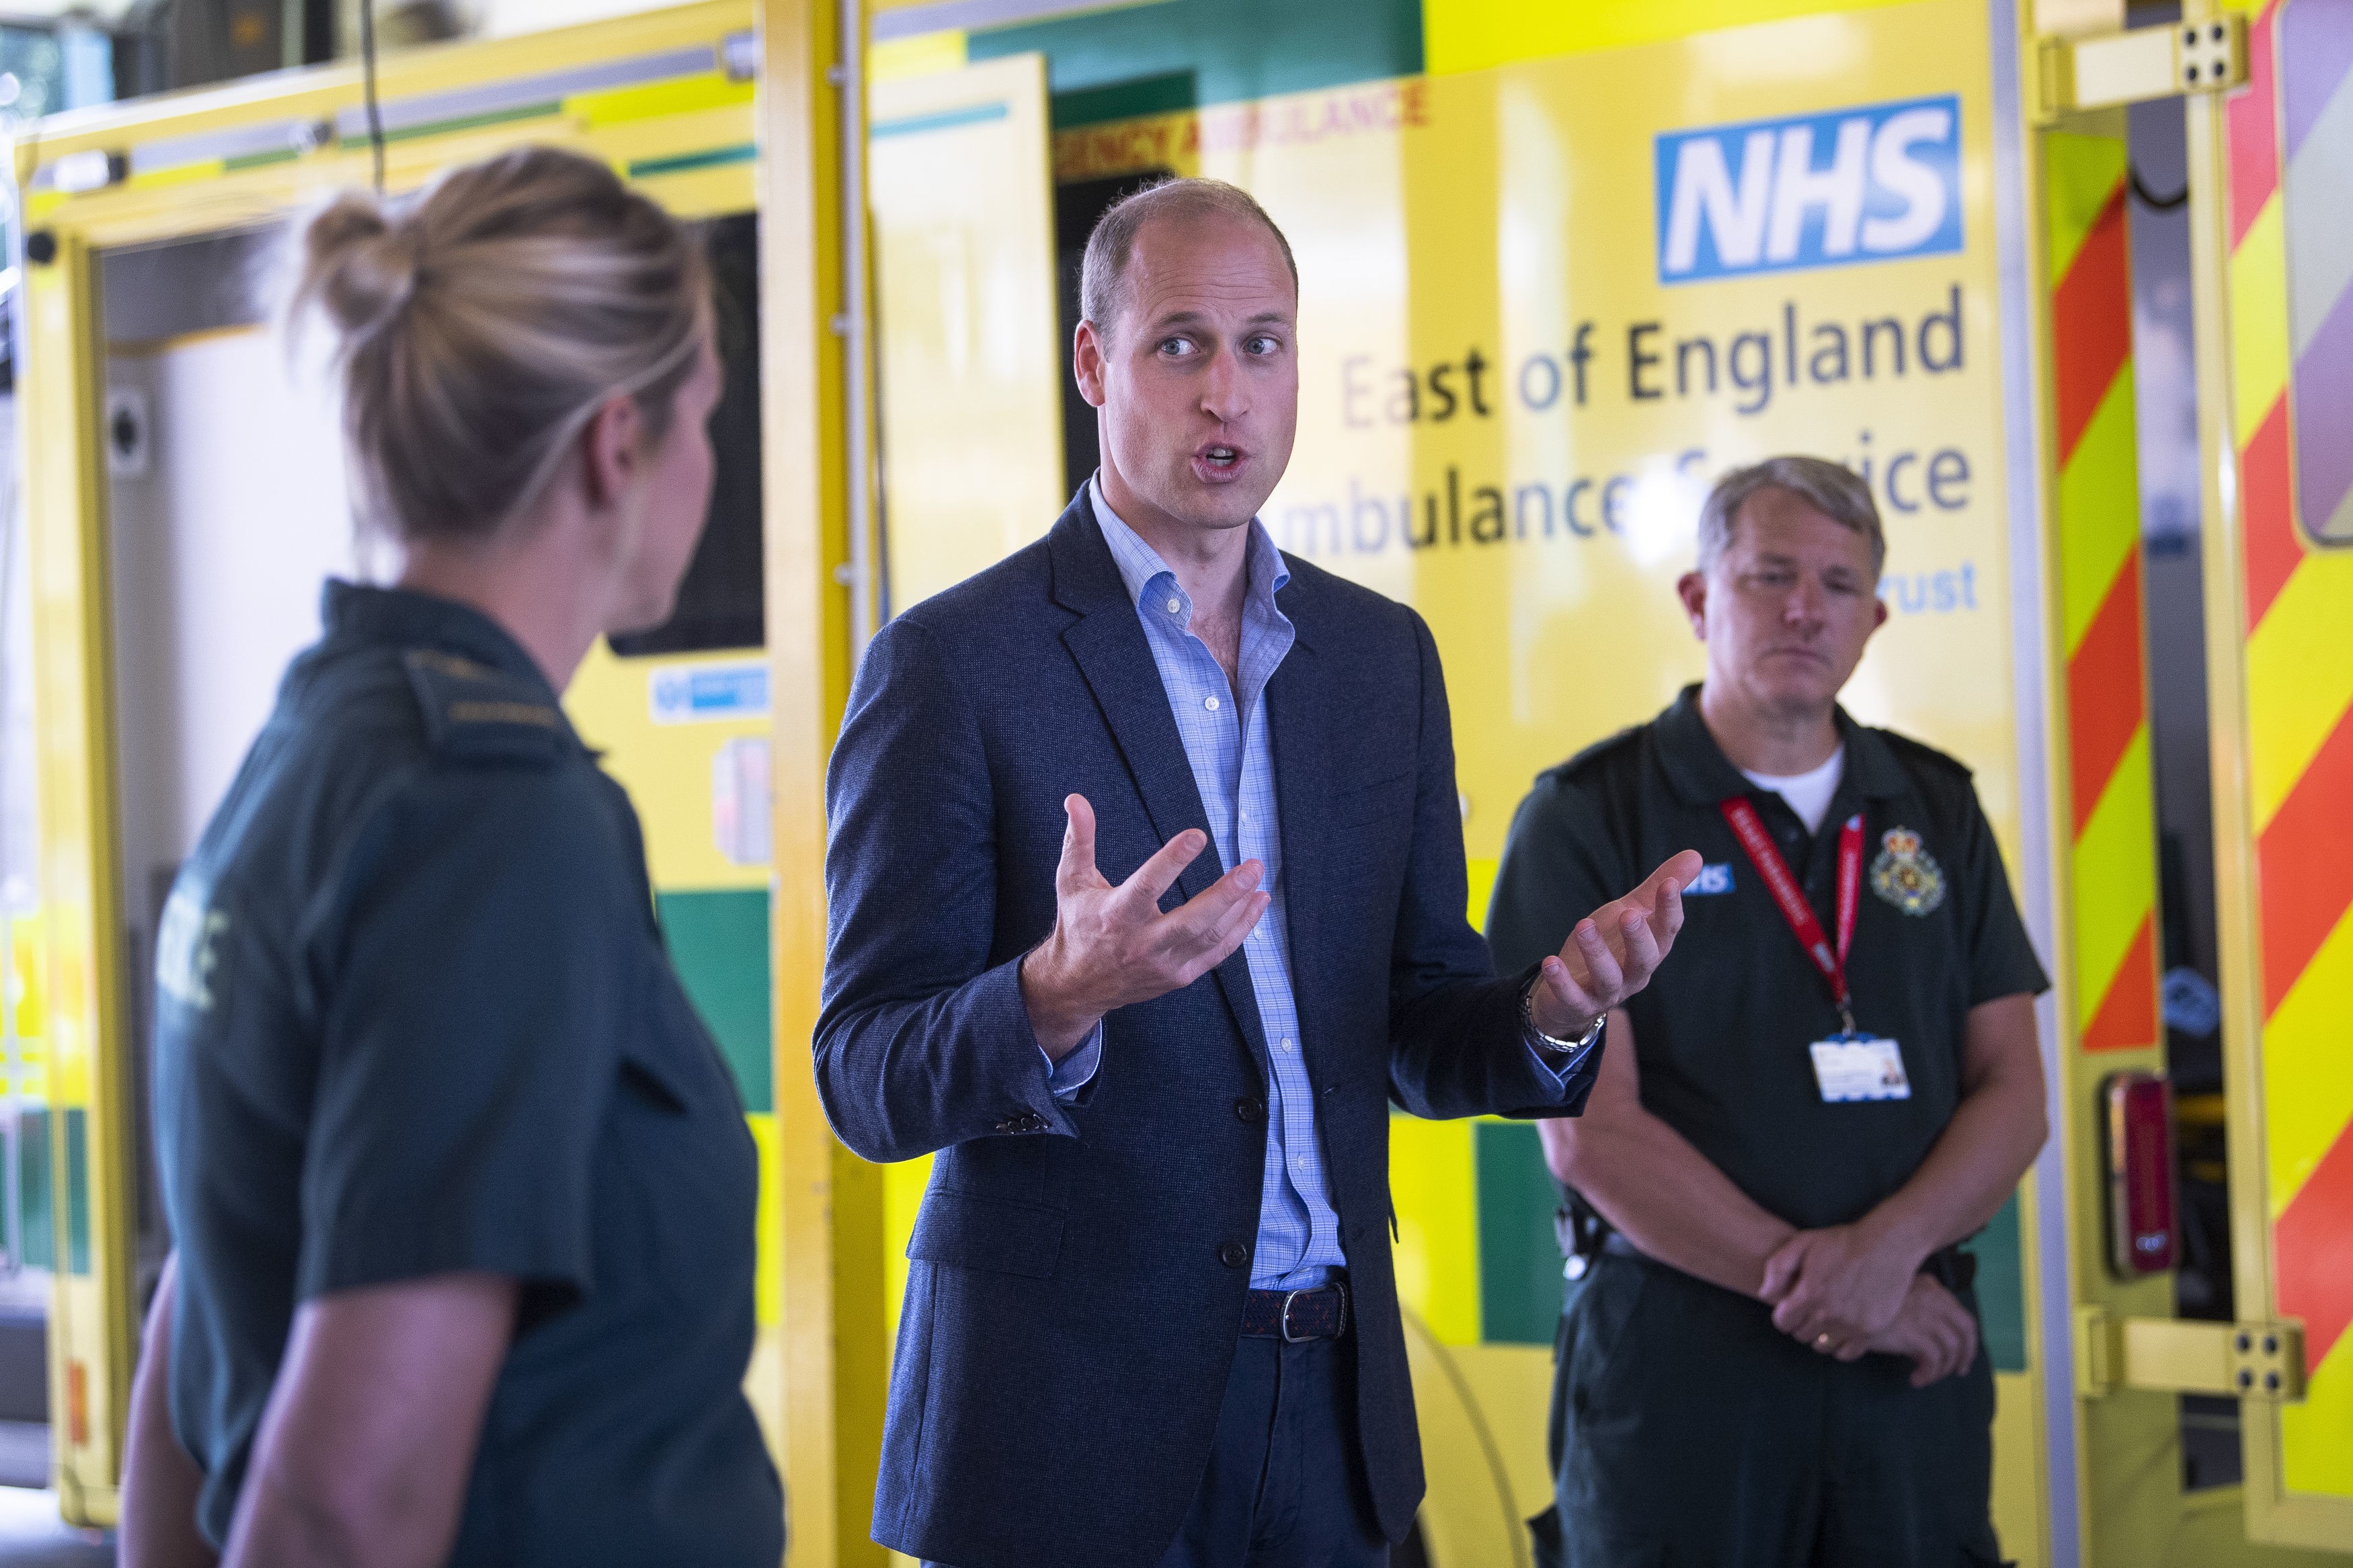 Príncipe William no primeiro evento após reabertura do Reino Unido em meio à pandemia de coronavírus em 2020 (Foto: Getty Images)